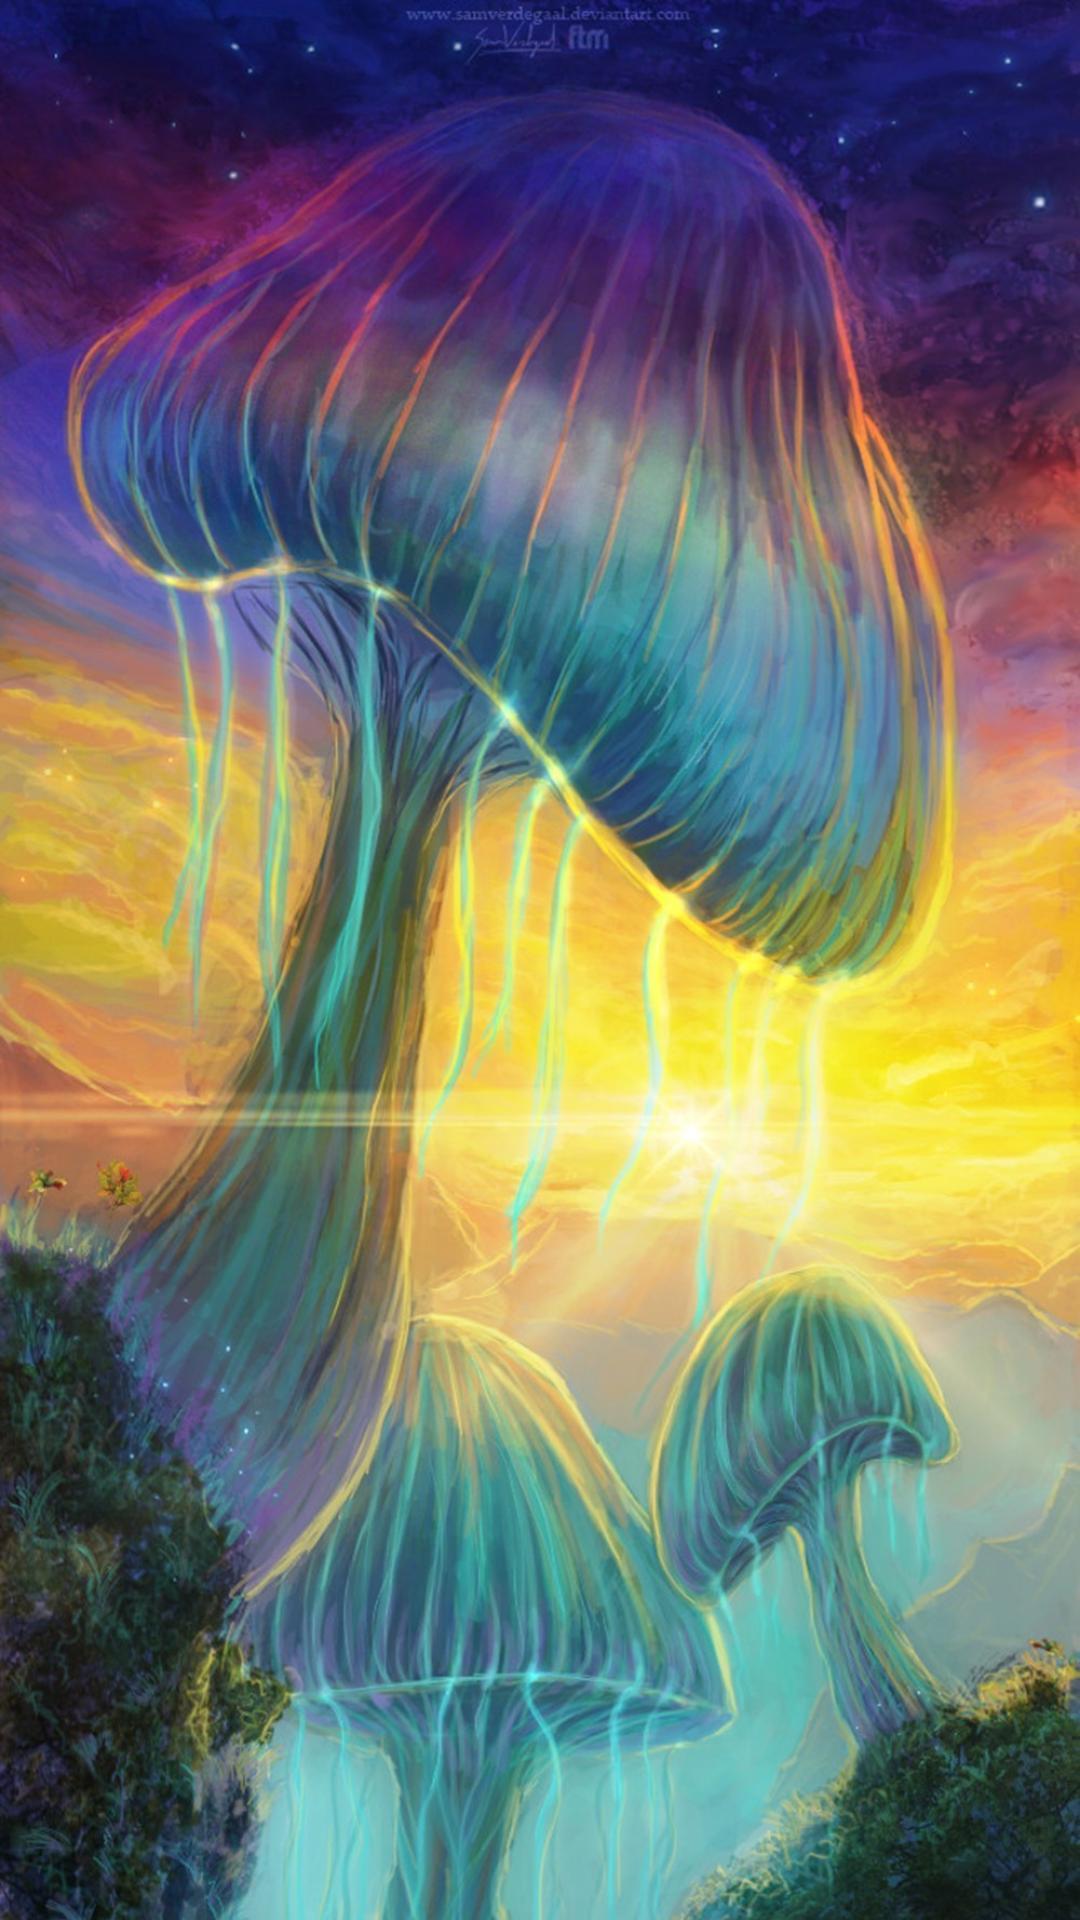 Mushrooms psychedelic fantasy art wallpaper